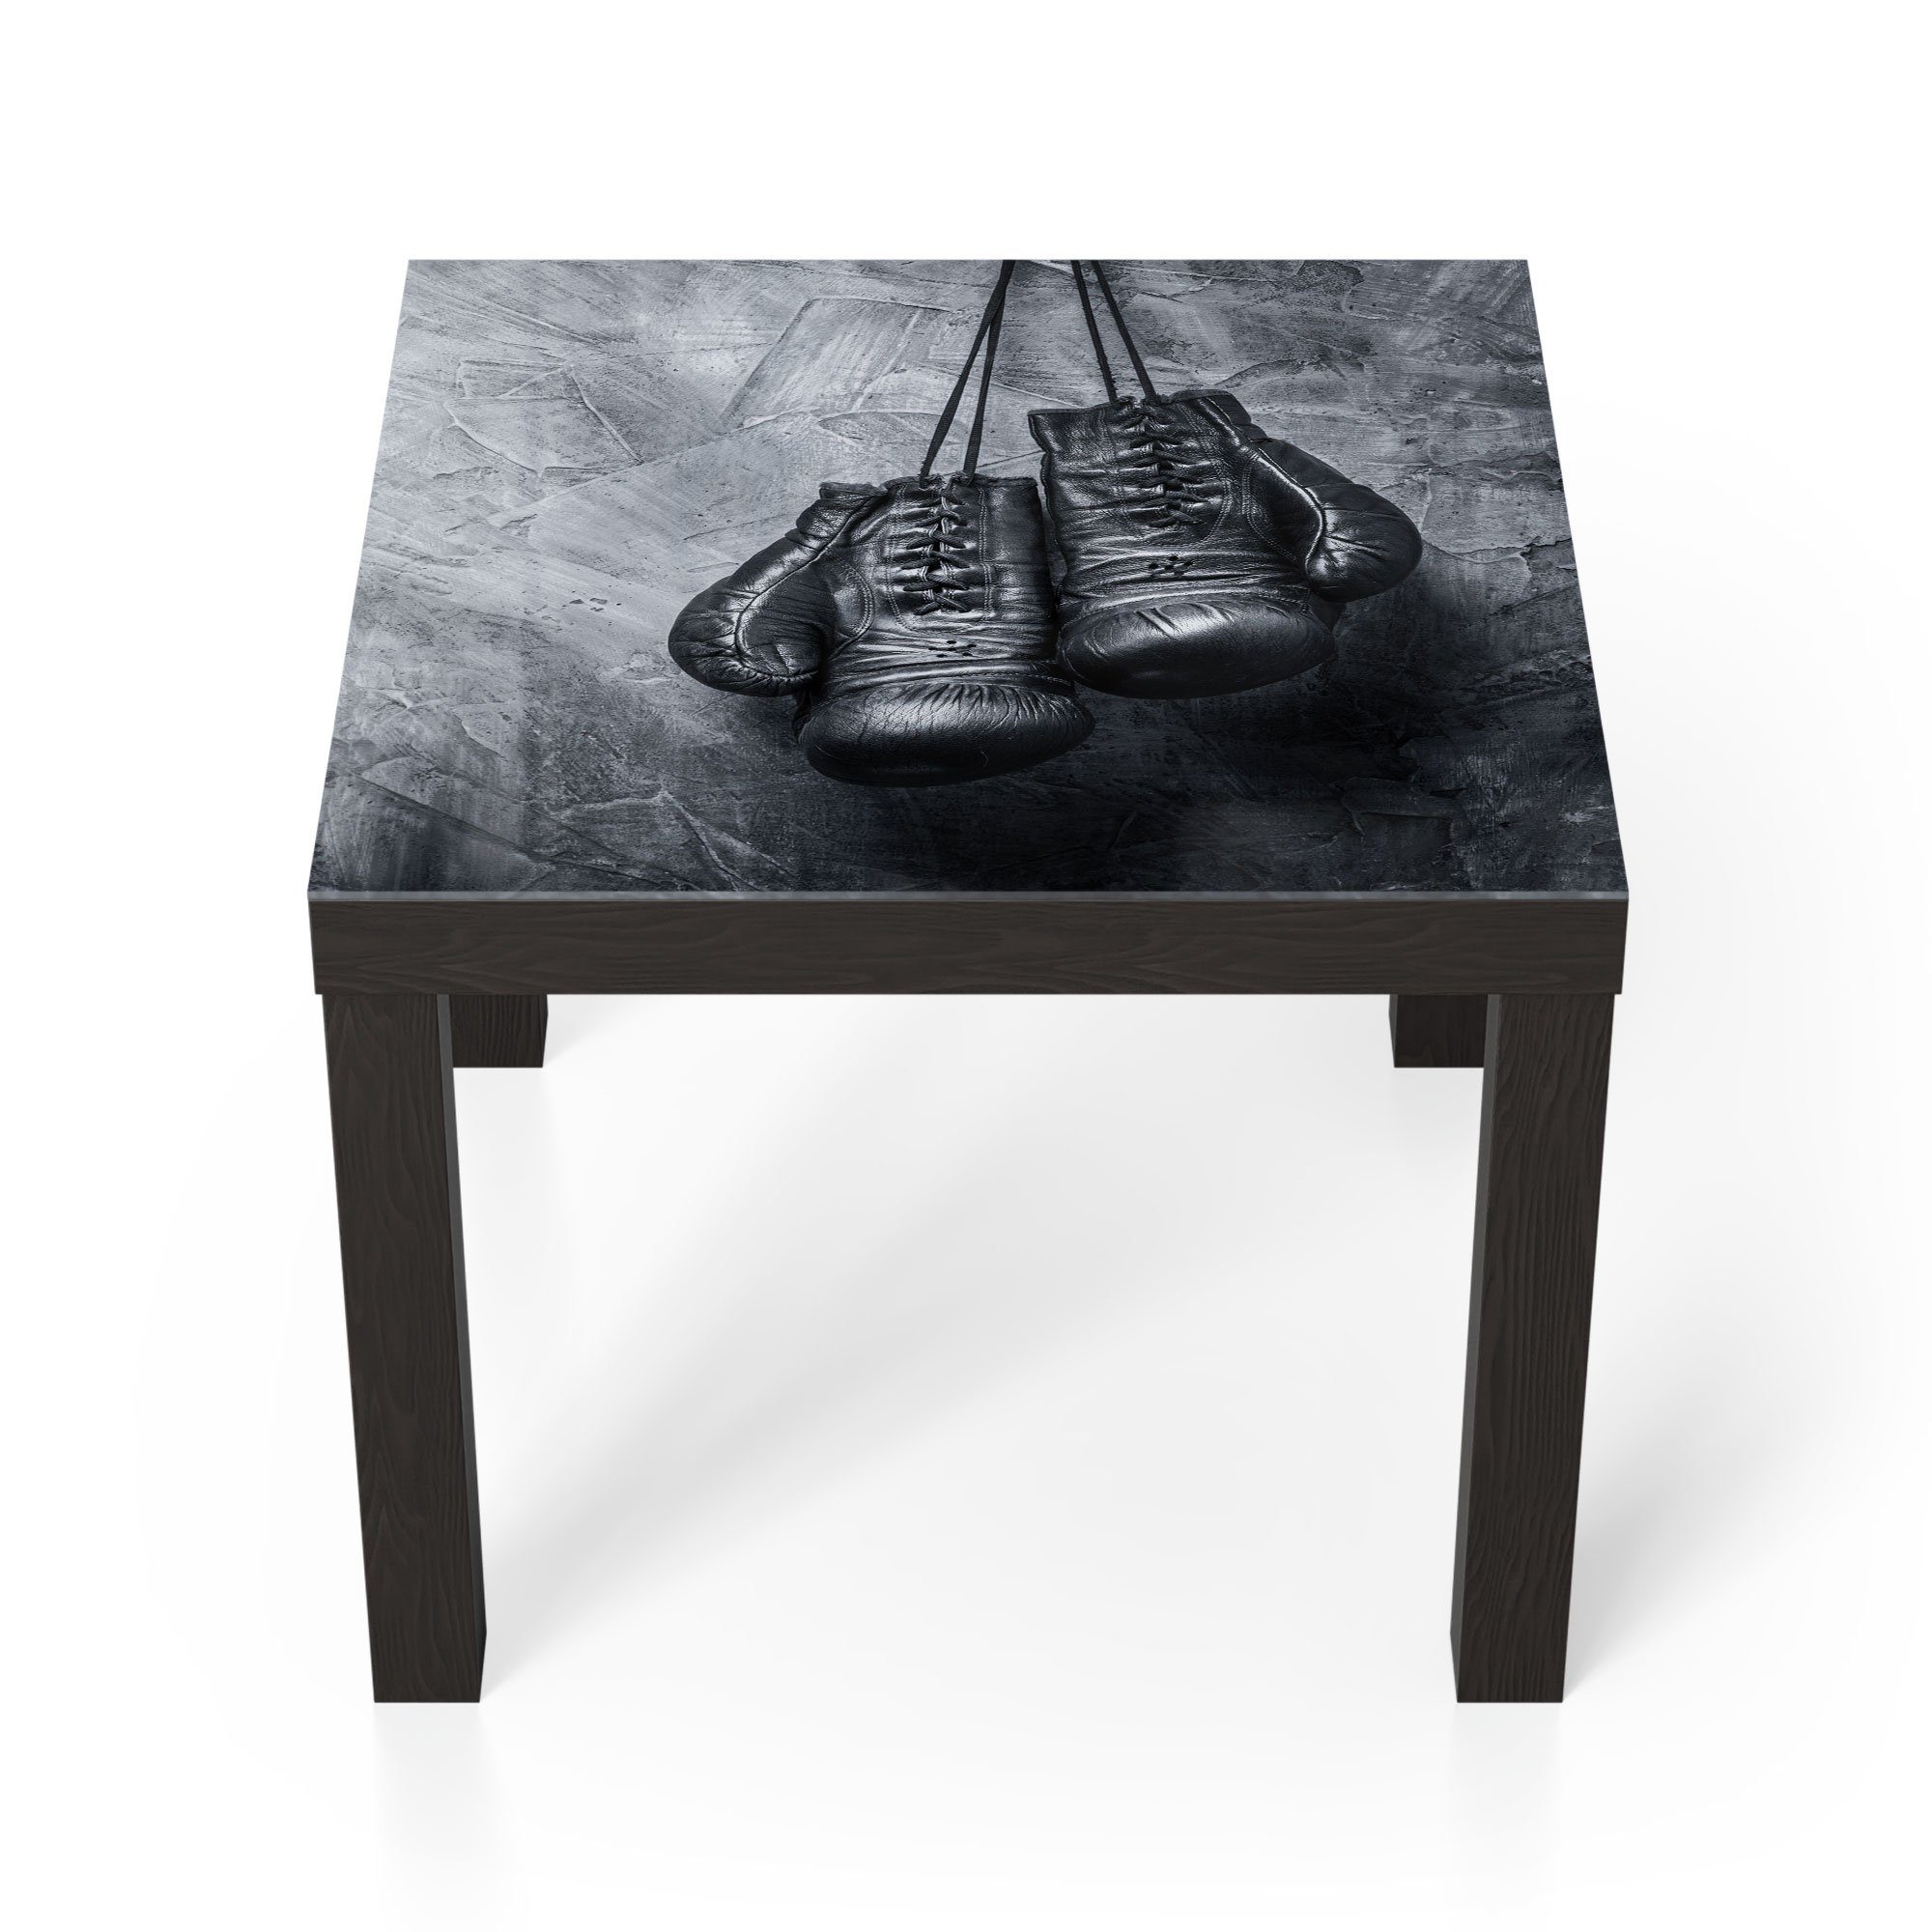 'Antike Schwarz modern Glas DEQORI Couchtisch Glastisch Boxhandschuhe', Beistelltisch